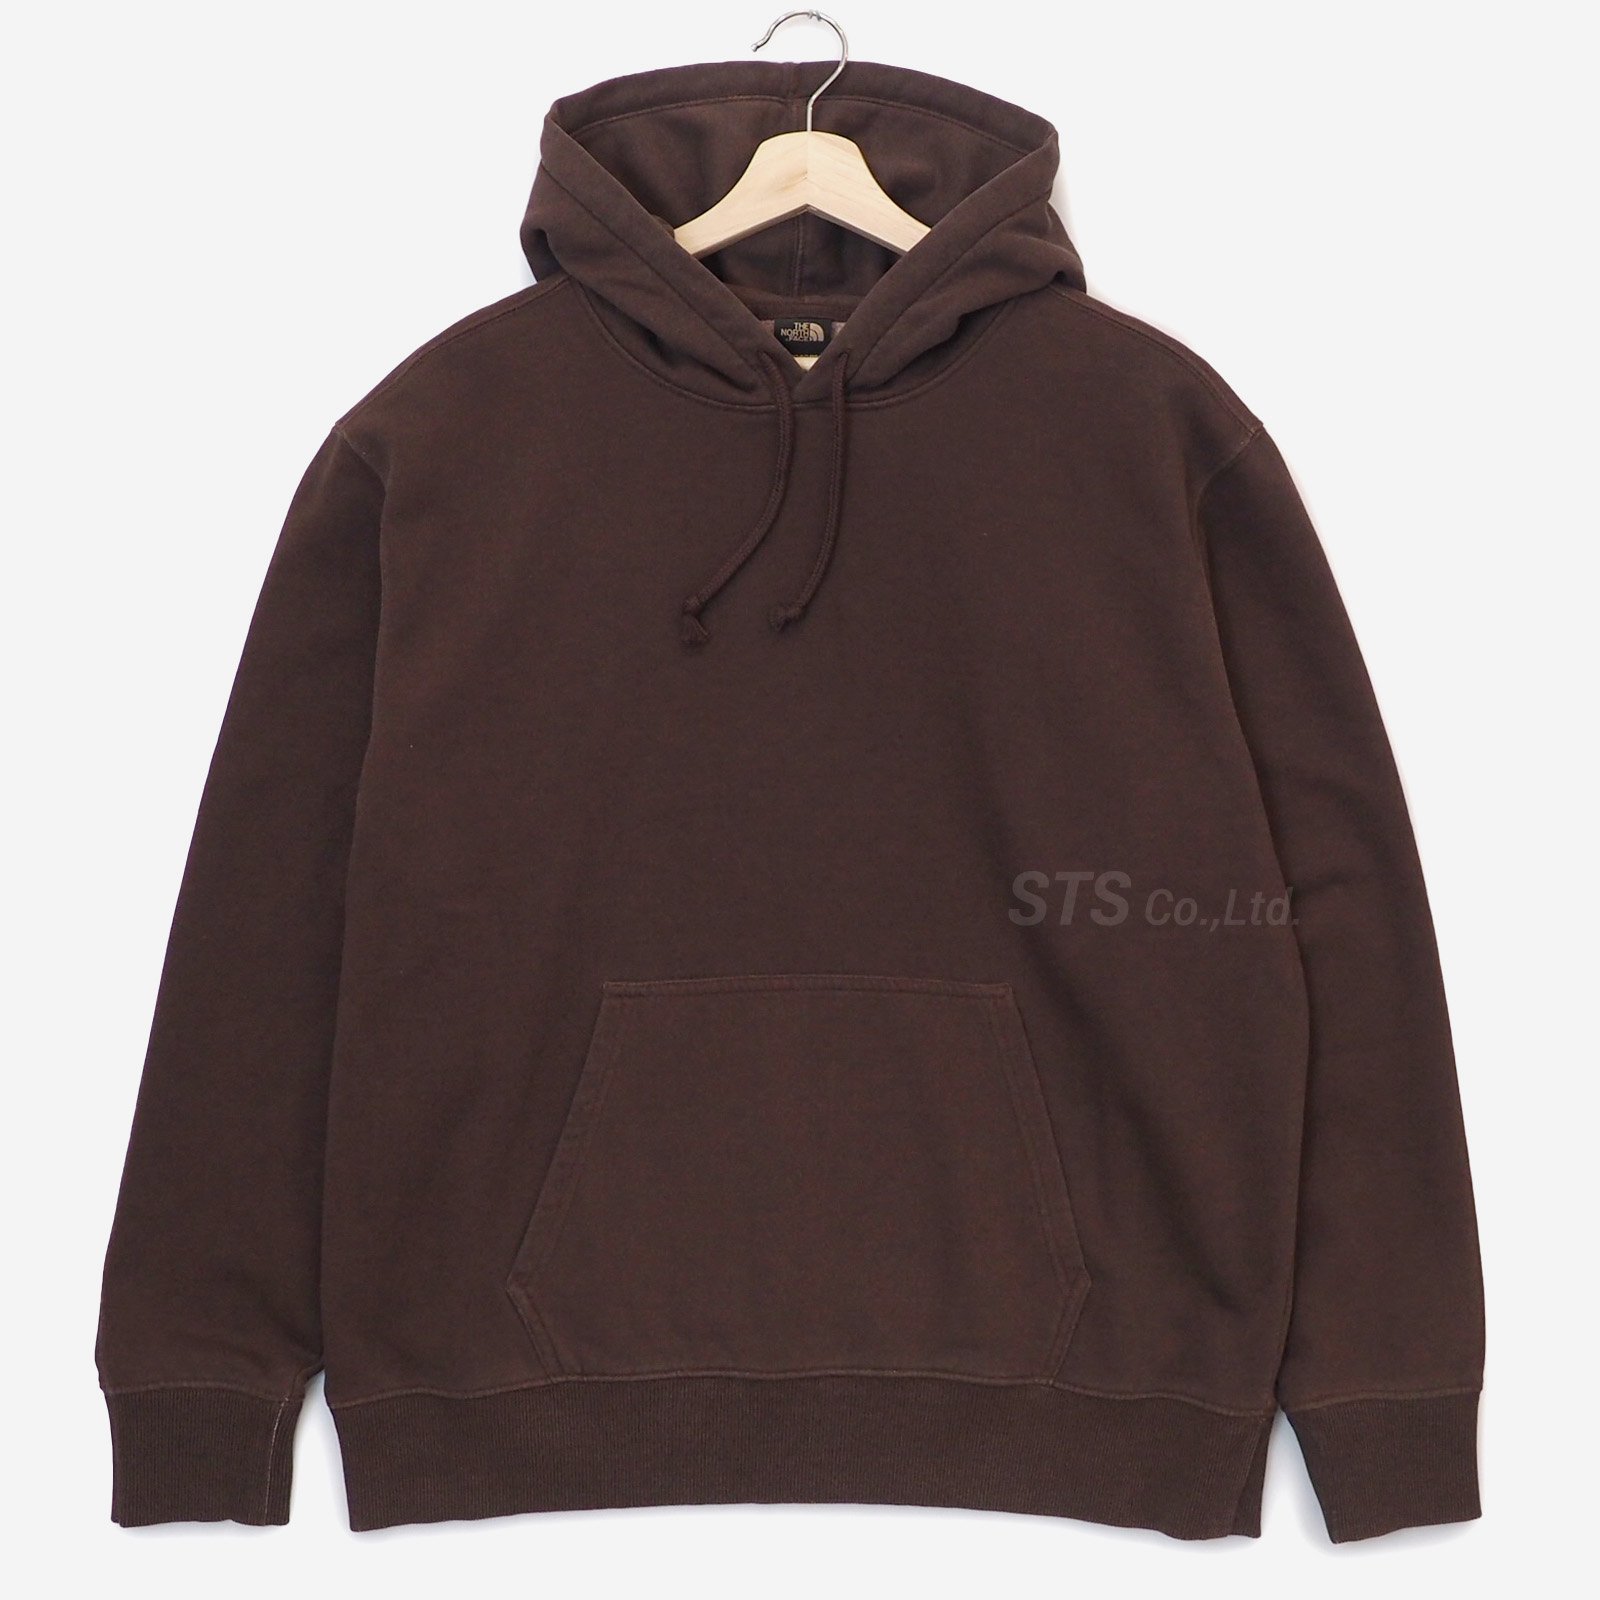 新品【黒・S】Pigment Printed Hooded Sweatshirtまとめ買い歓迎